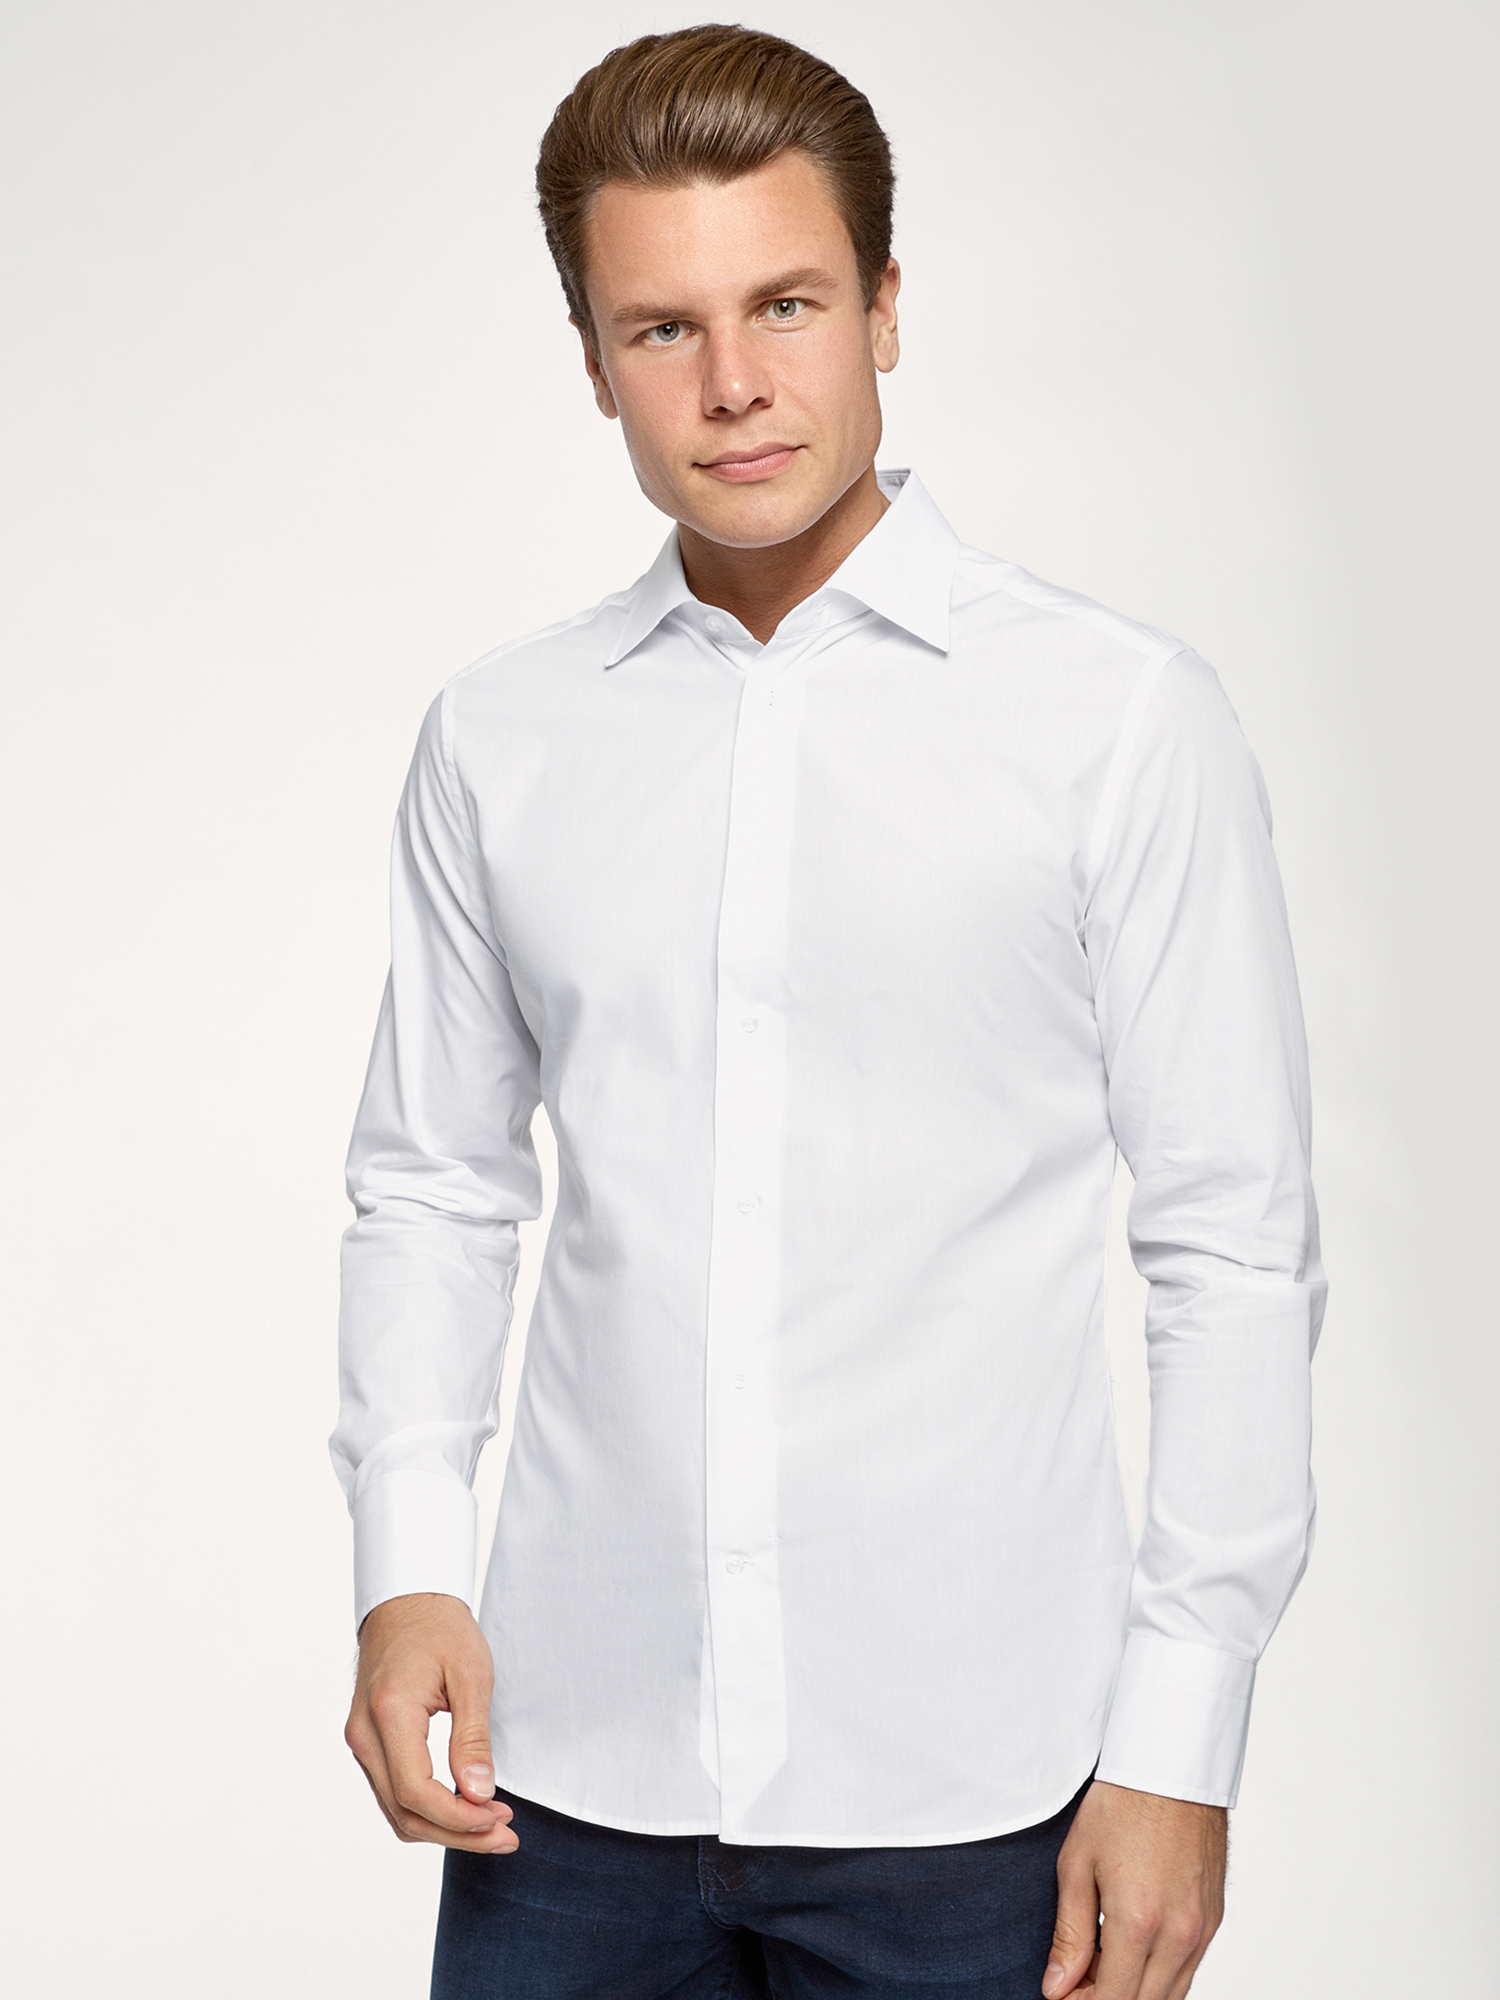 Рубашка мужская oodji 3B140011M белая XS